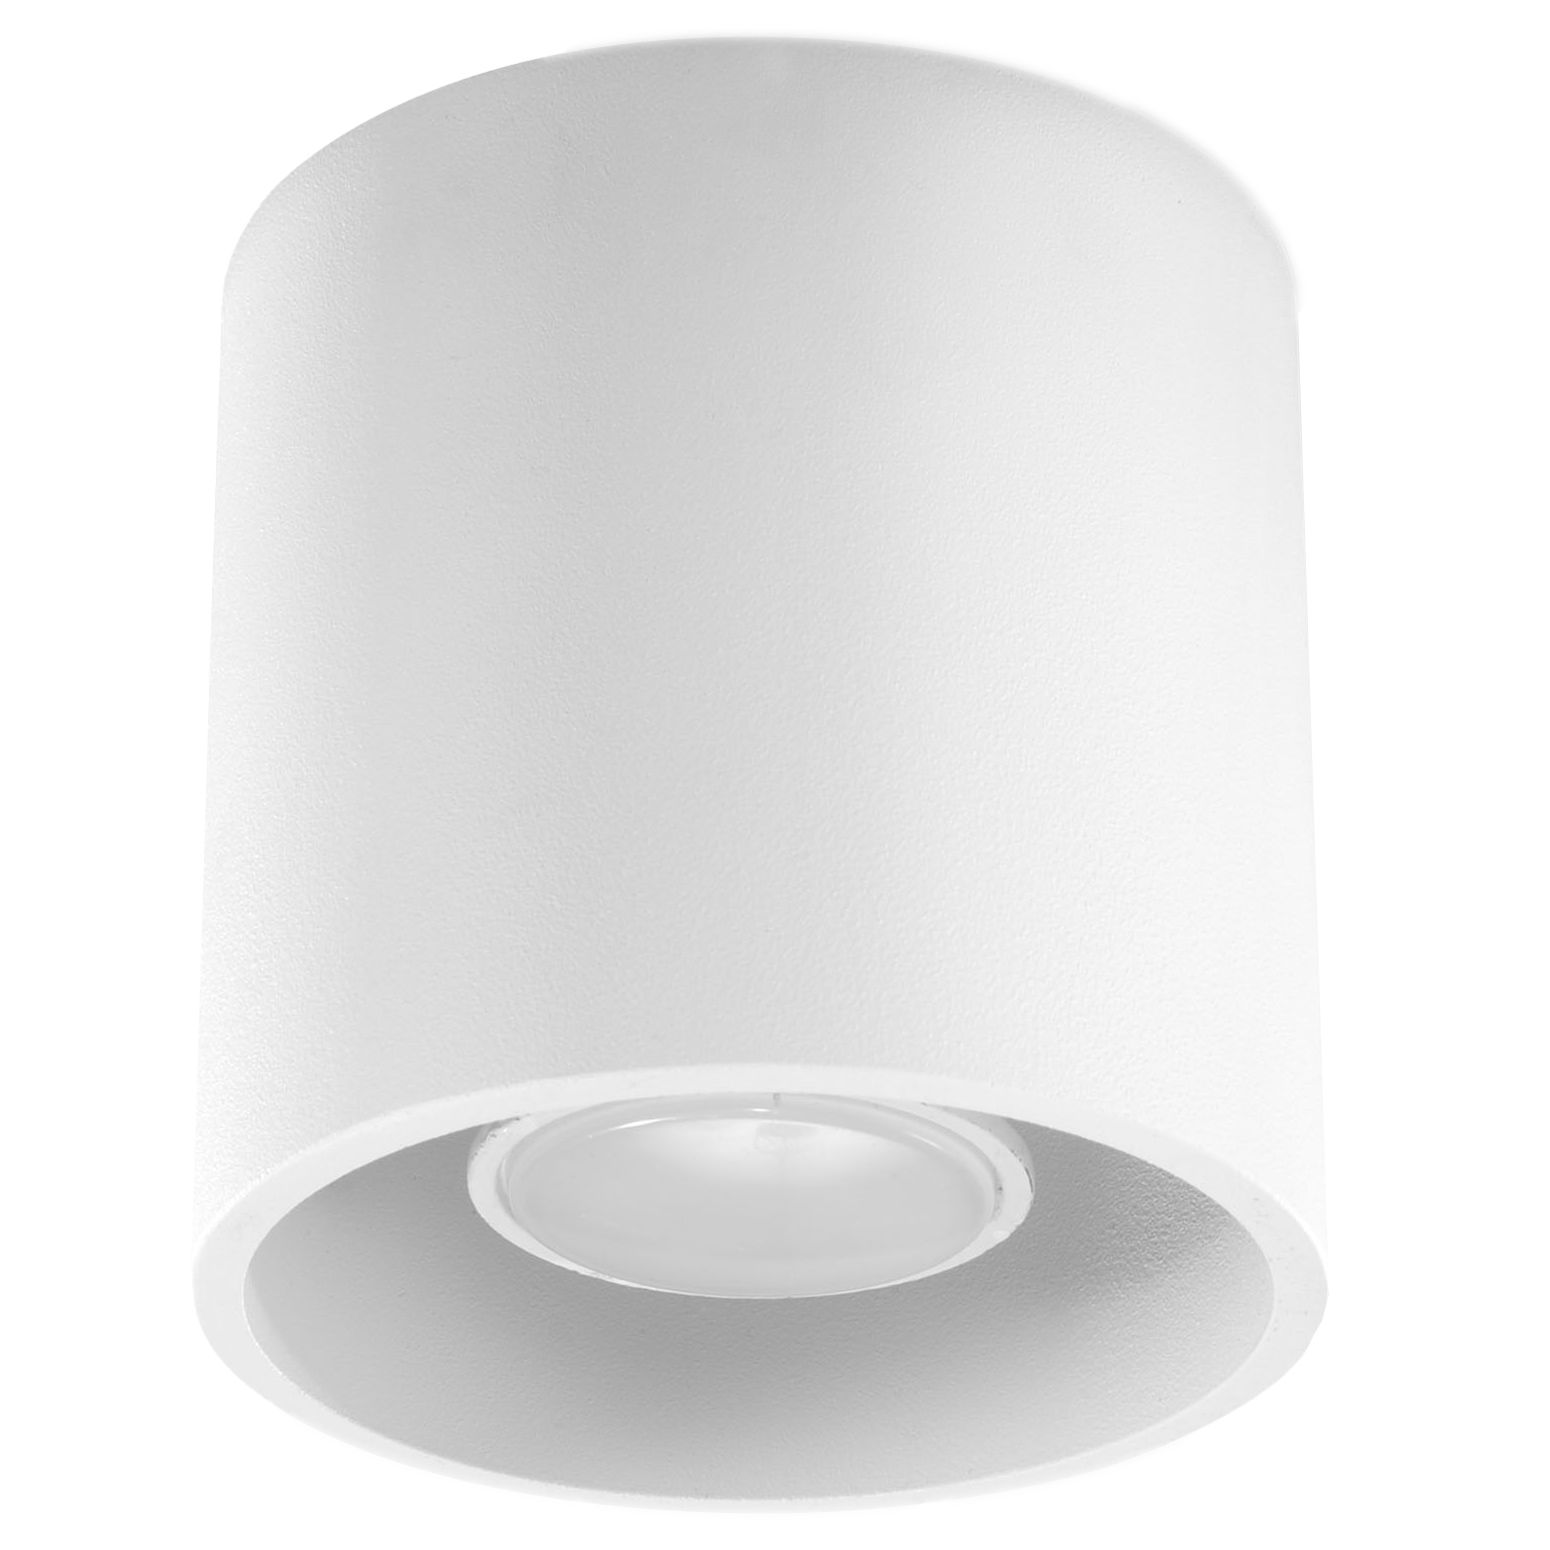 LED Deckenlampe ORBIS RUND weiß Aluminium inkl. LED warmweiß 7W weiß -  leuchte | LichtED.de - LED Lampen und Beleuchtung